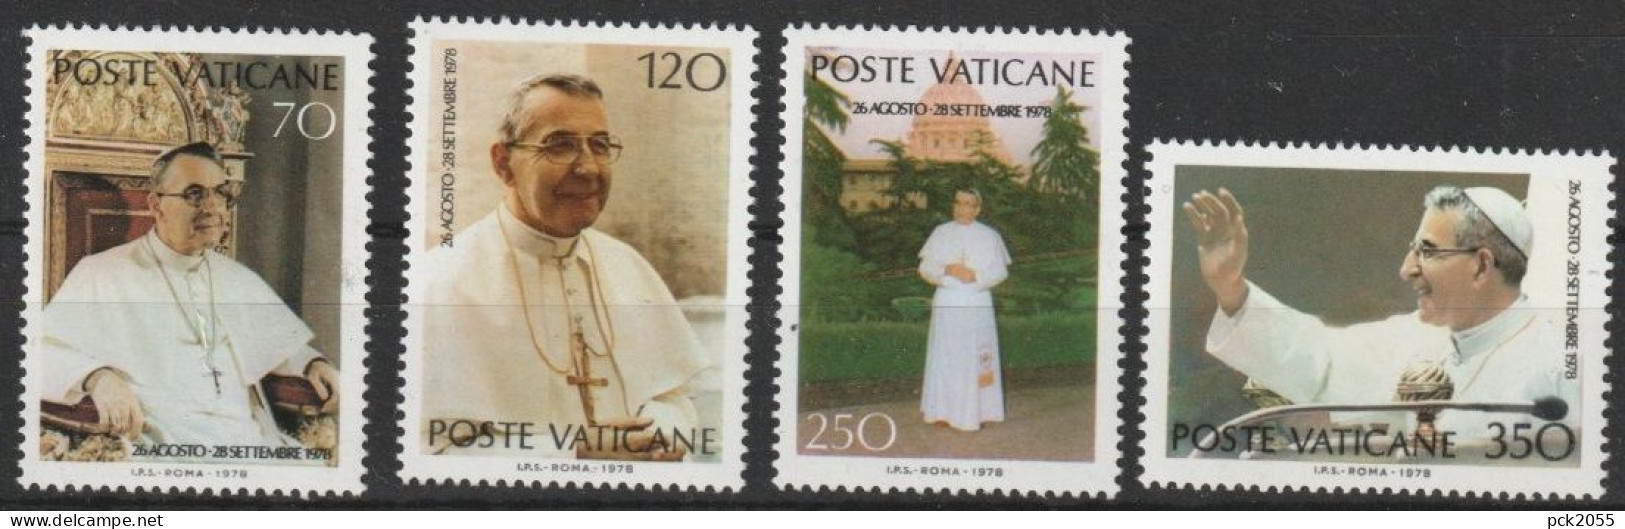 Vatikan 1978 Mi-Nr.732 - 735 ** Postfrisch. Papst Johannes Paul I.  ( B 2870 ))günstige Versandkosten - Ungebraucht